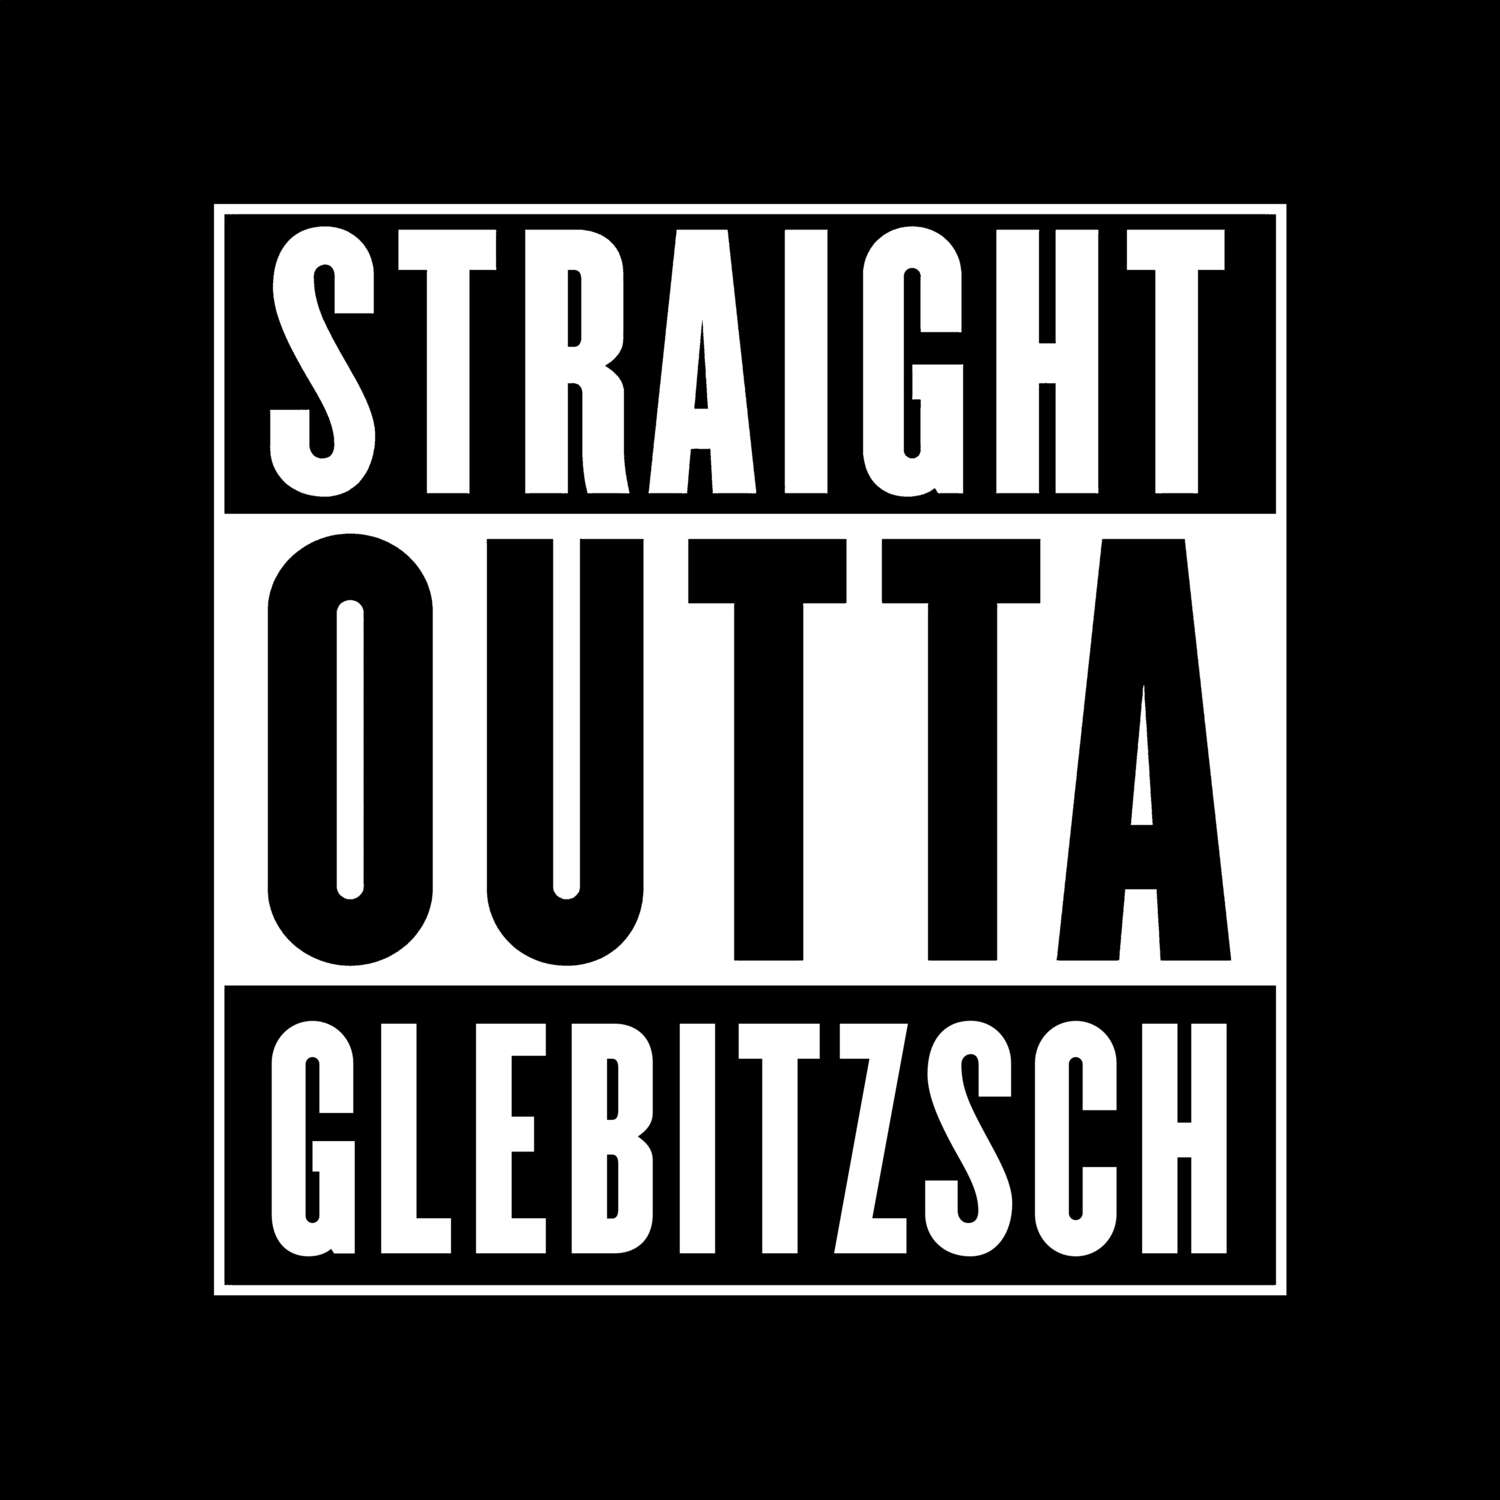 Glebitzsch T-Shirt »Straight Outta«